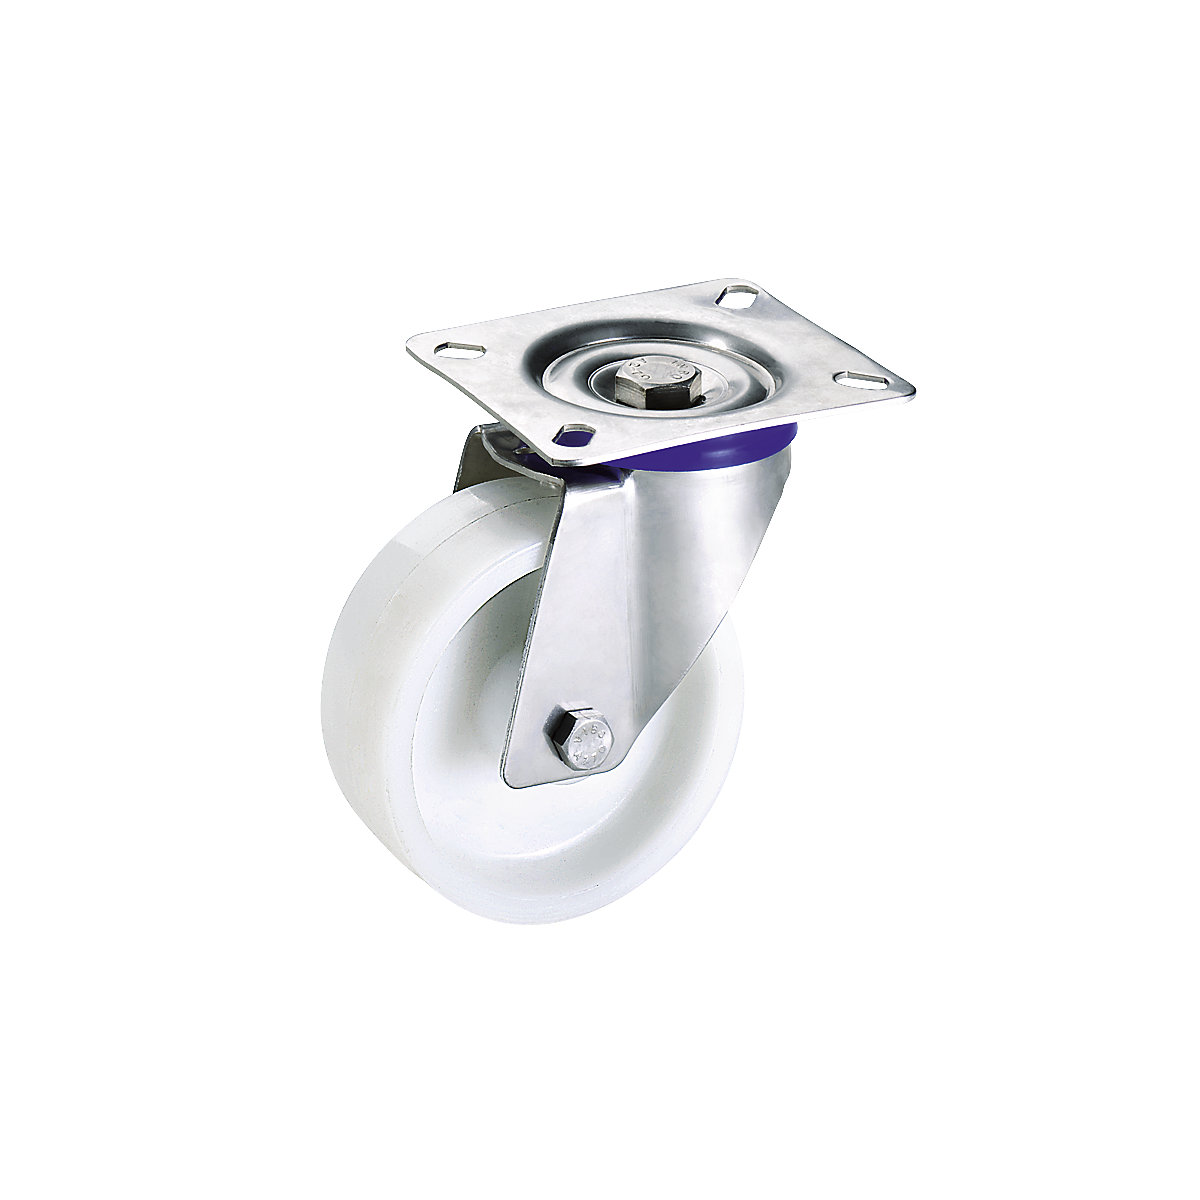 Polyamidové koleso, puzdro z ušľachtilej ocele – Proroll, Ø x šírka kolesa 80 x 30 mm, otočné koliesko-3